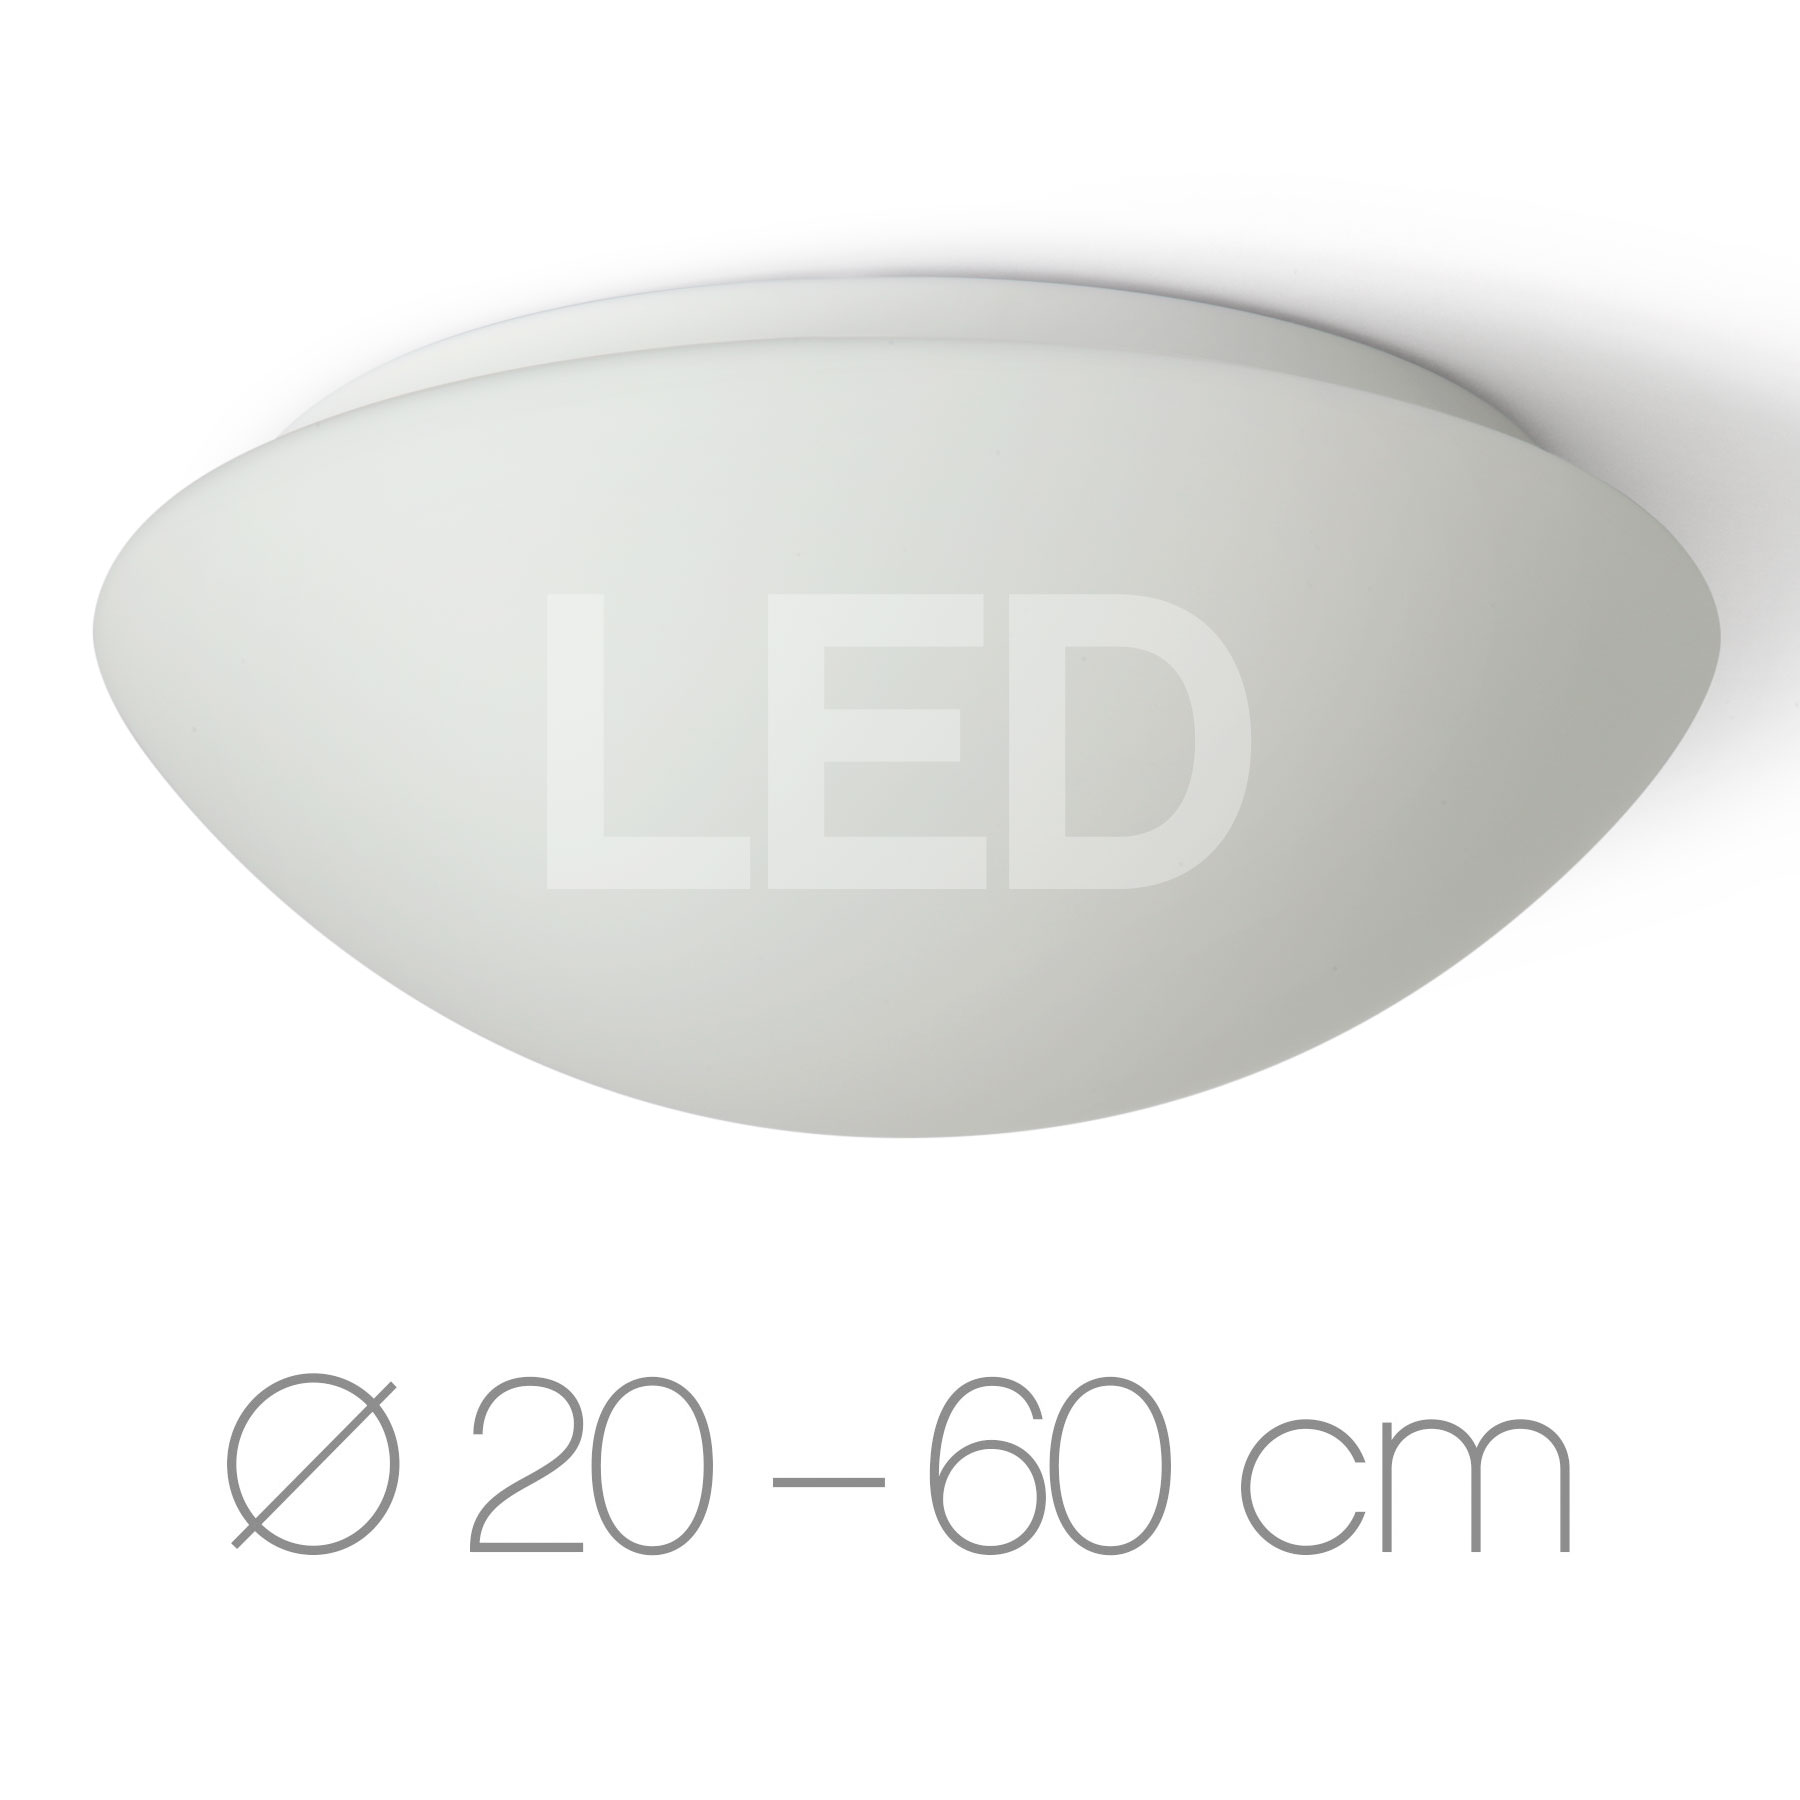 Funktionale Opalglas-Deckenleuchte AURORA LED, Ø 20–60 cm: Diese schlichten LED-Deckenleuchten überzeugen mit elegantem, mattem Opalglas und großem Einsatzspektrum